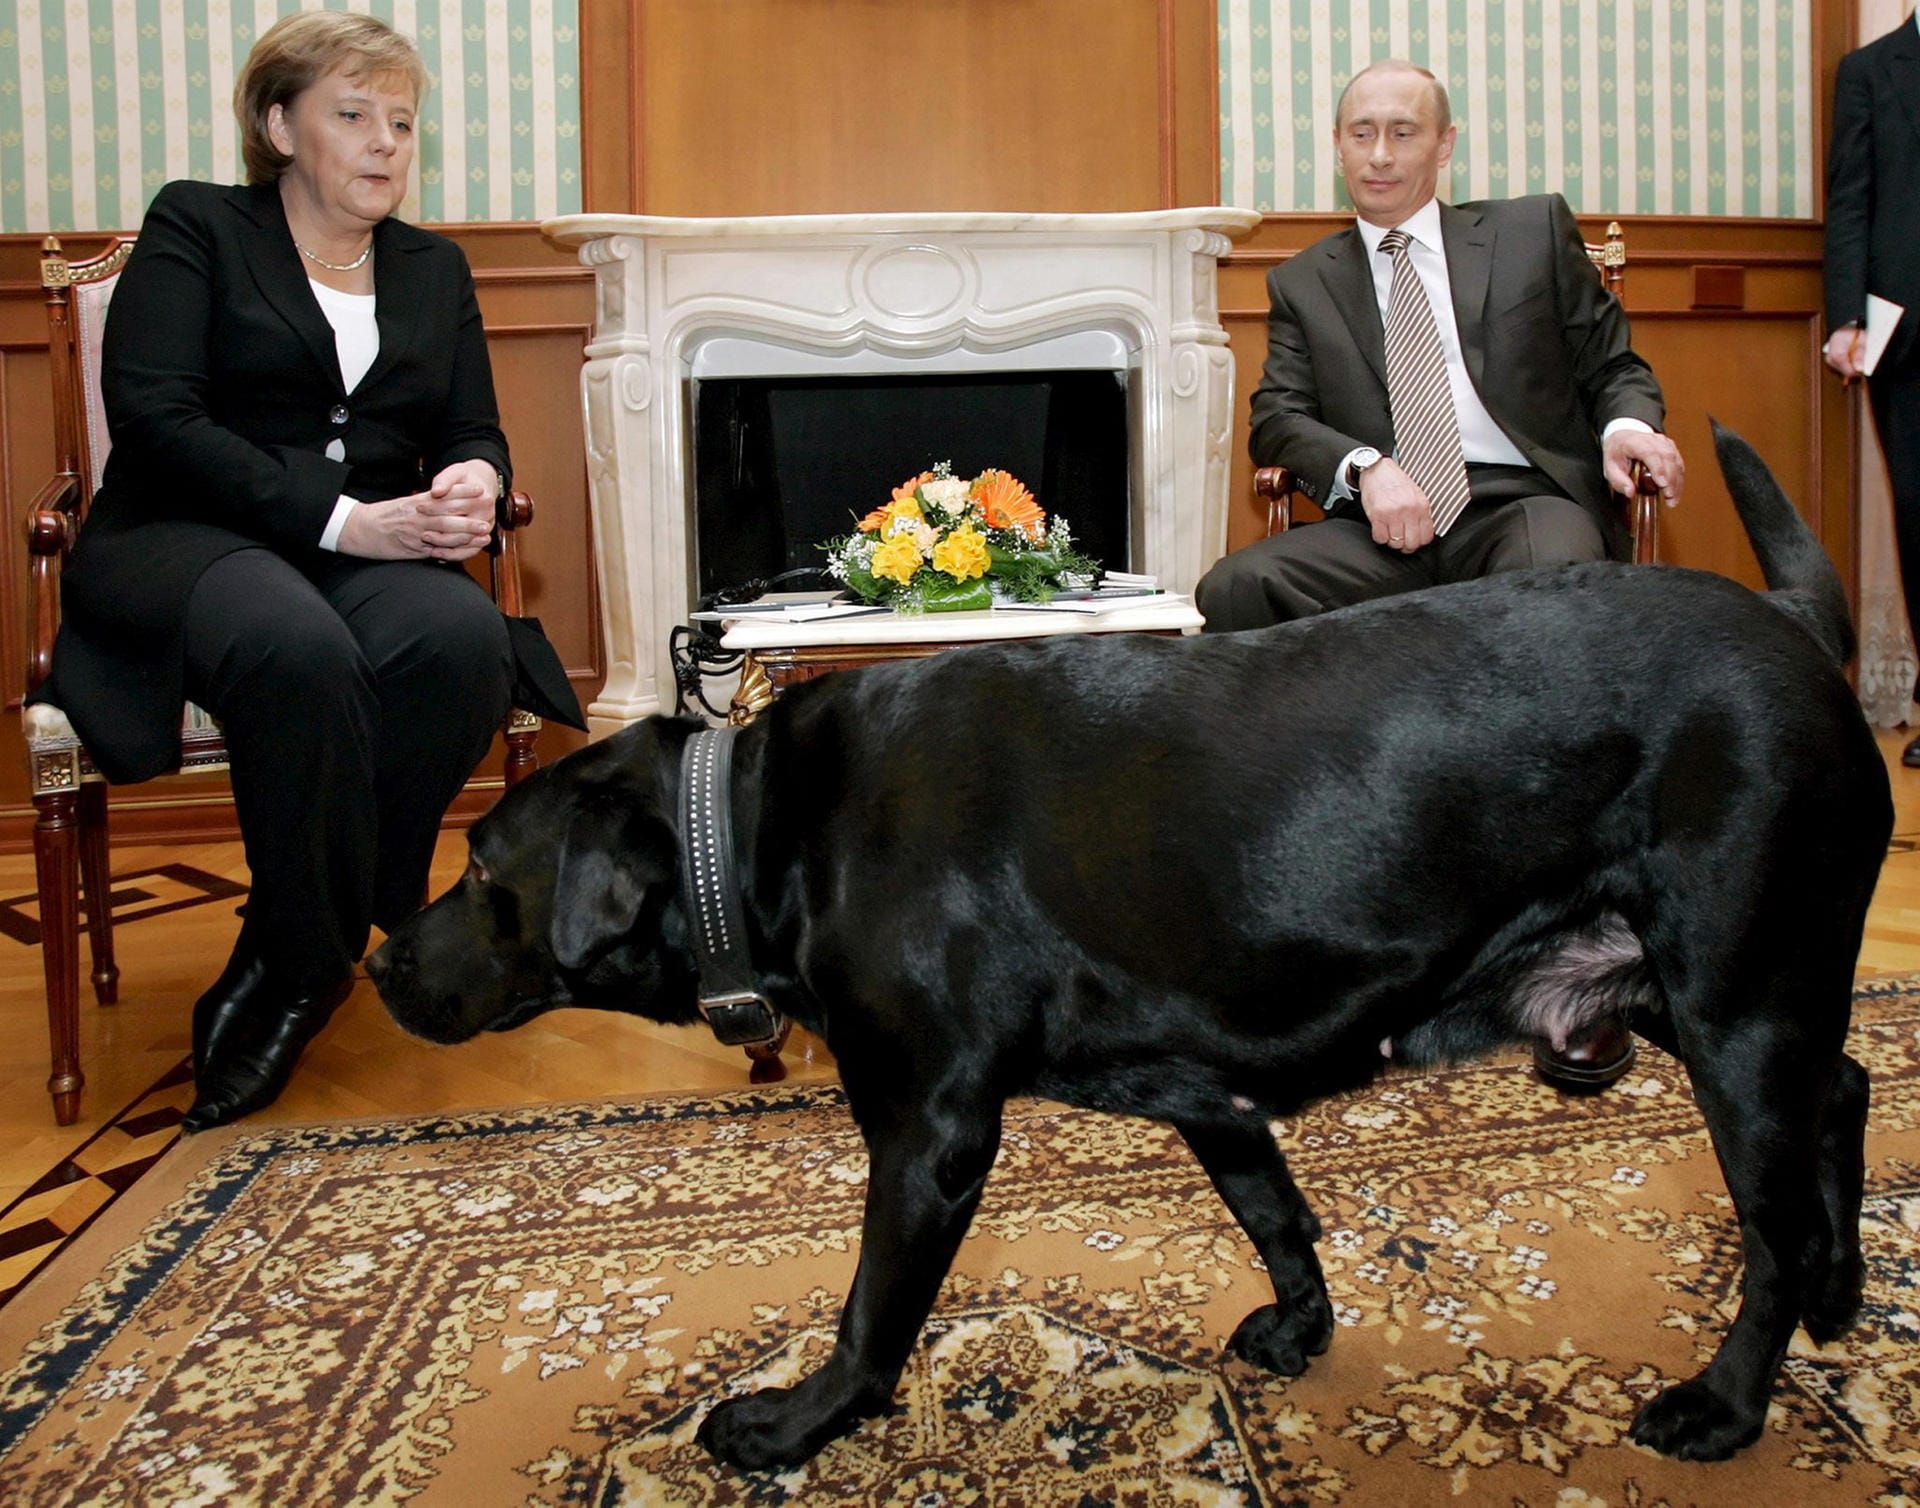 Mit Merkel lief es nicht ganz so rund. Bei einem frühen Treffen mit ihr ließ er seinen schwarzen Labrador durchs Zimmer laufen. Klare Machtdemonstration: Merkel hat eine "gewisse Sorge" vor Hunden, wie sie einmal sagte.